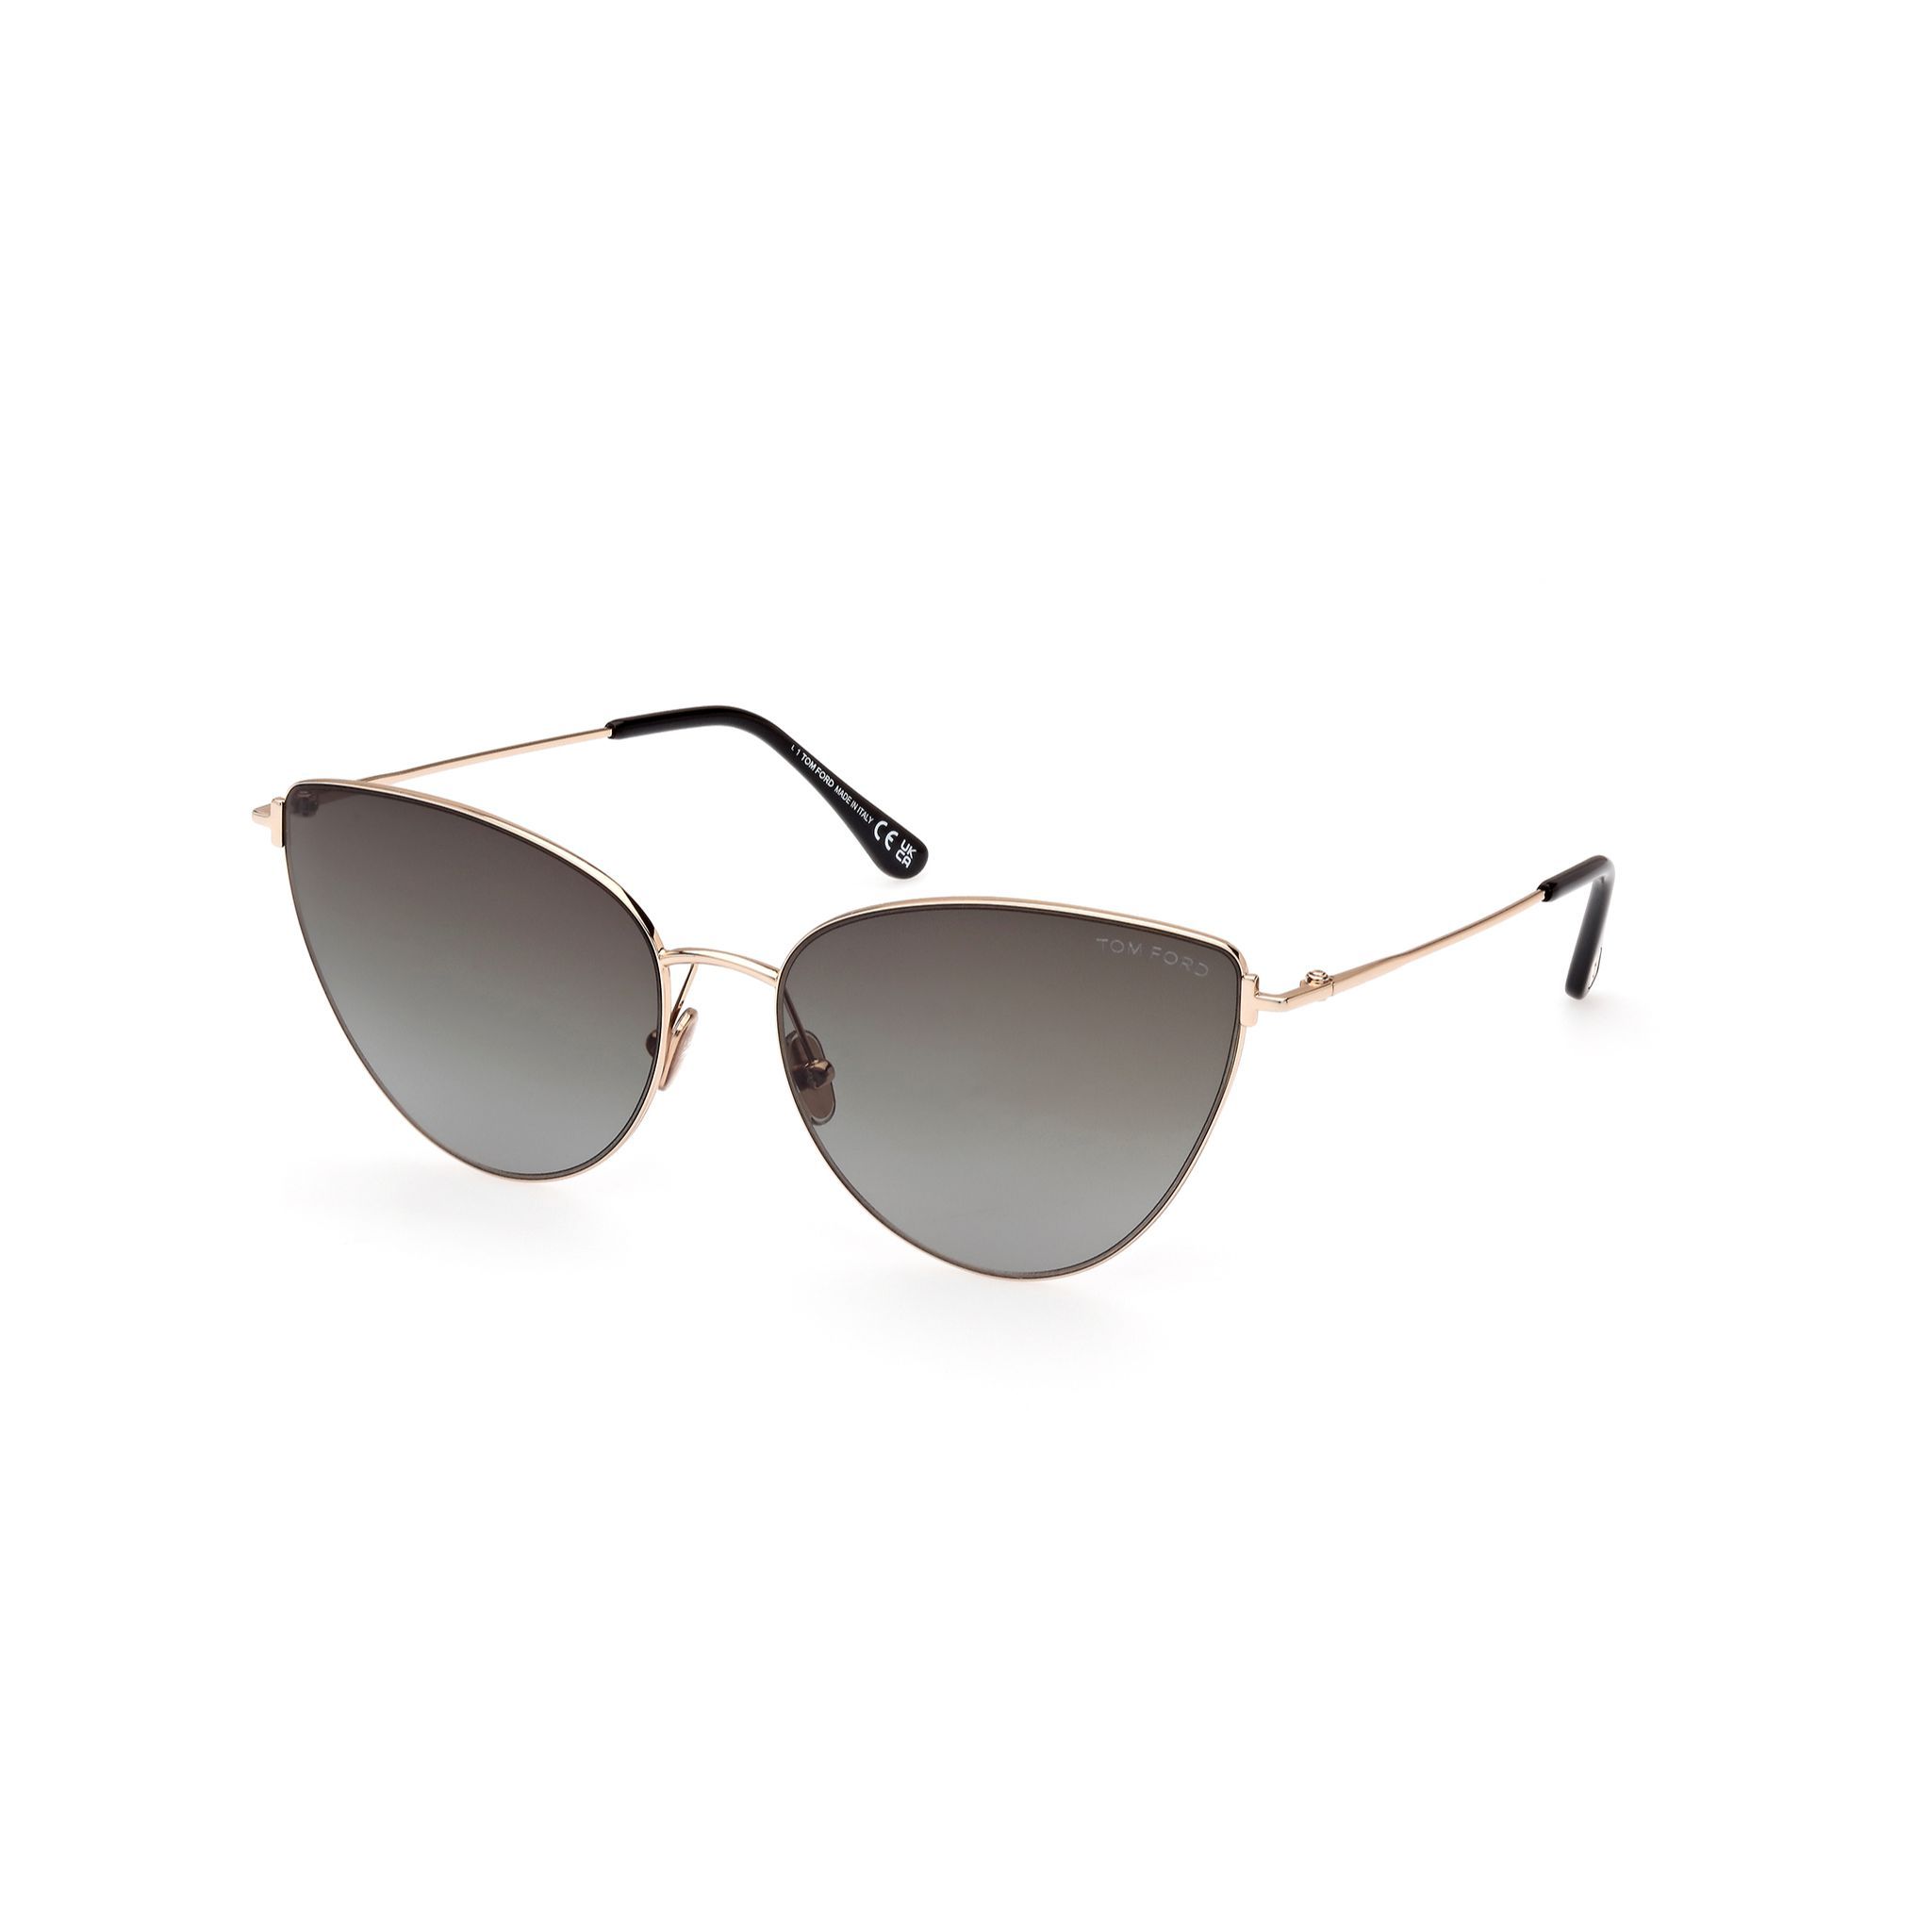 FT1005 Cateye Sunglasses 28B - size 62